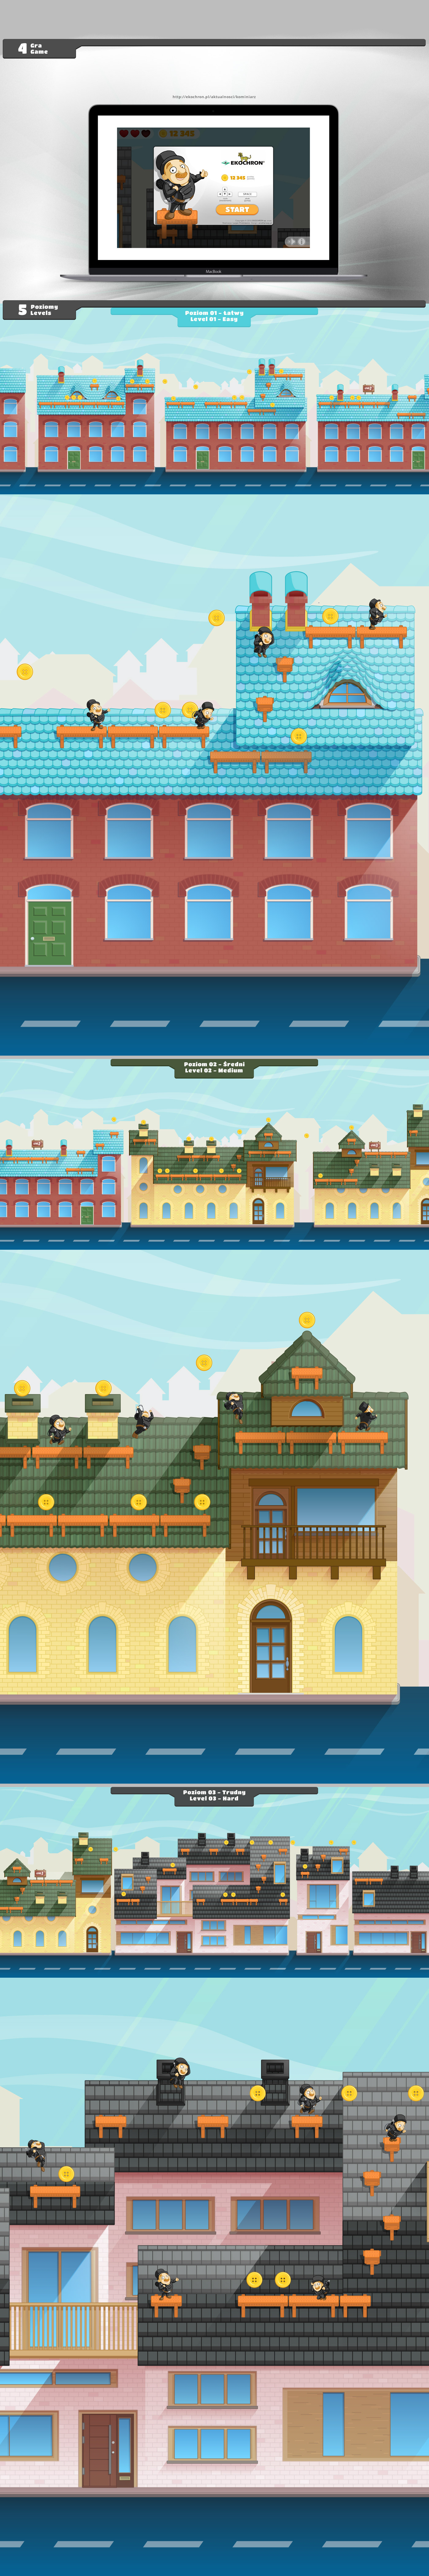 animation  Character design  Level Design game platformer chimney sweep Roof tile chimney bench